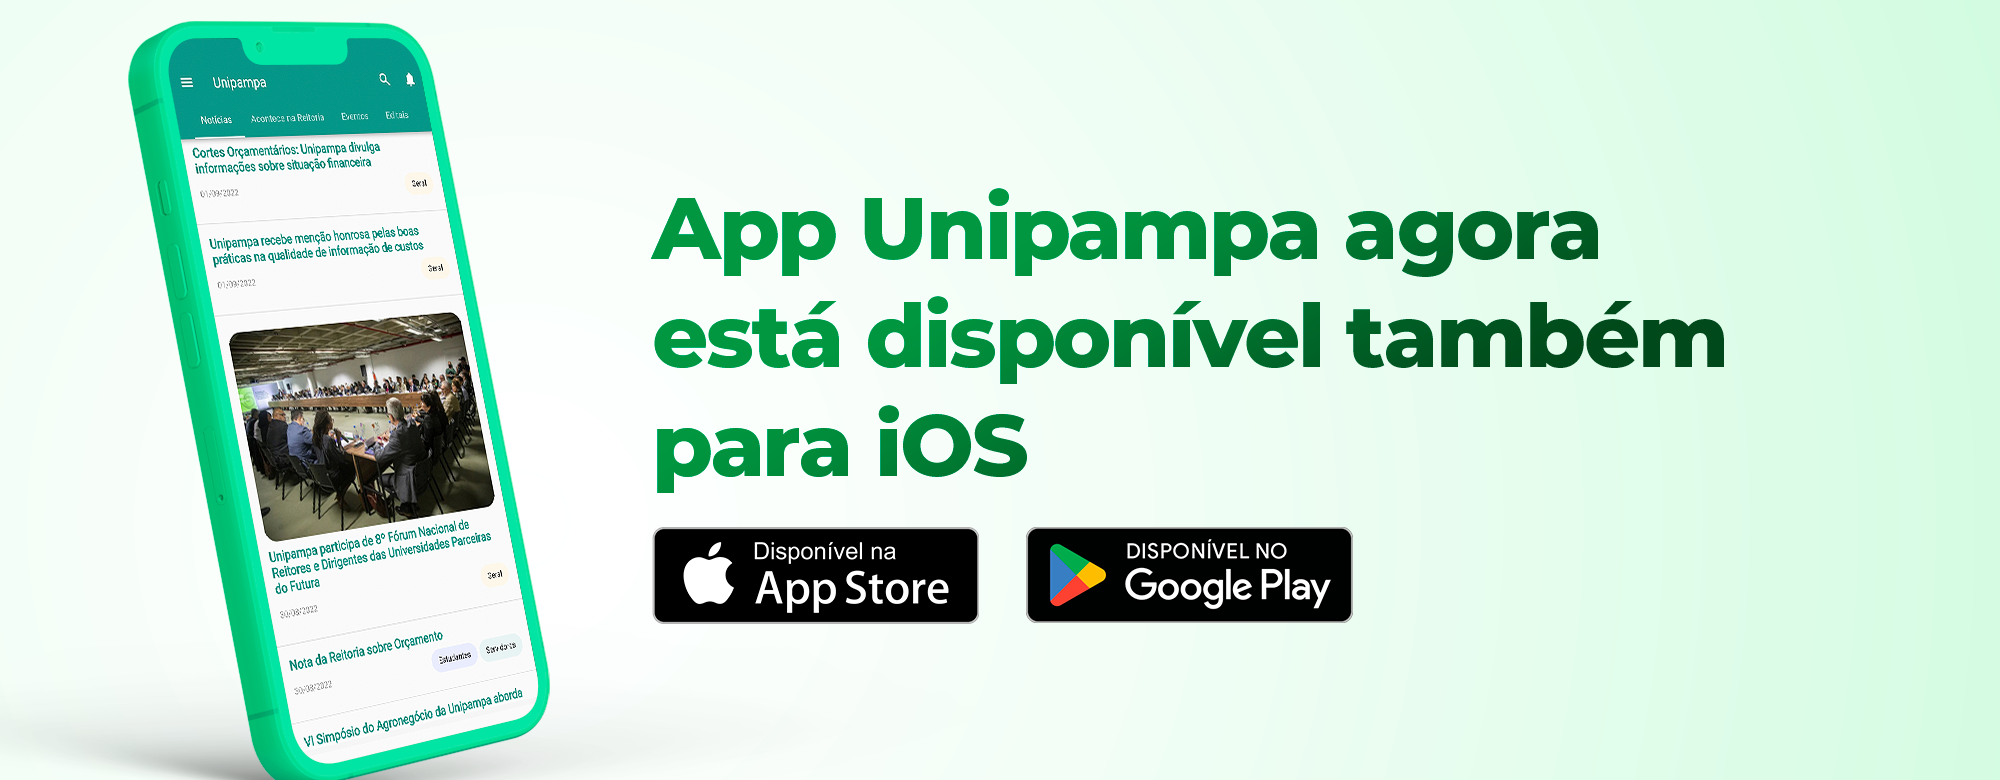 Card com ícone de celular e título App Unipampa agora está disponível também para iOS